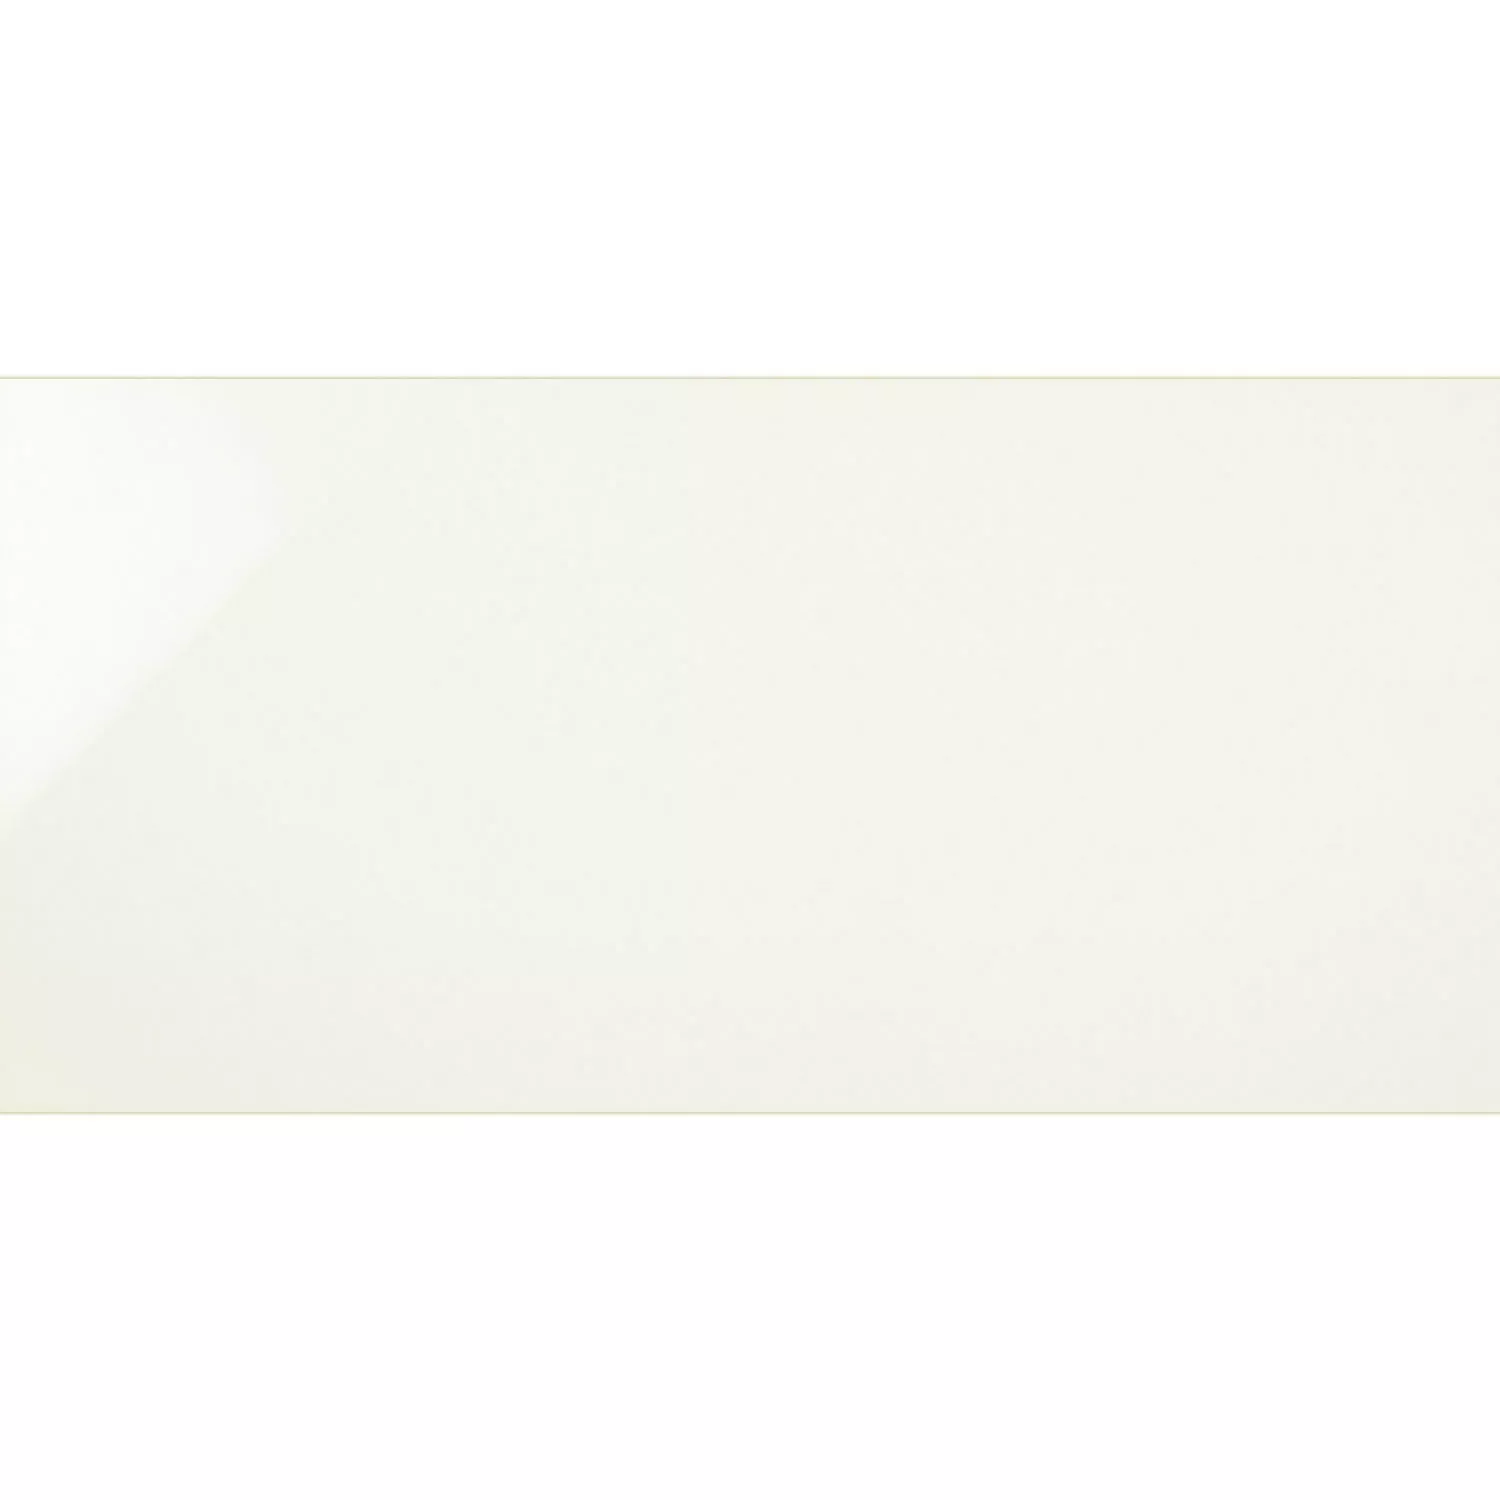 Próbka Płytki Ścienne Anabell Kremowa Błyszczący 30x60cm